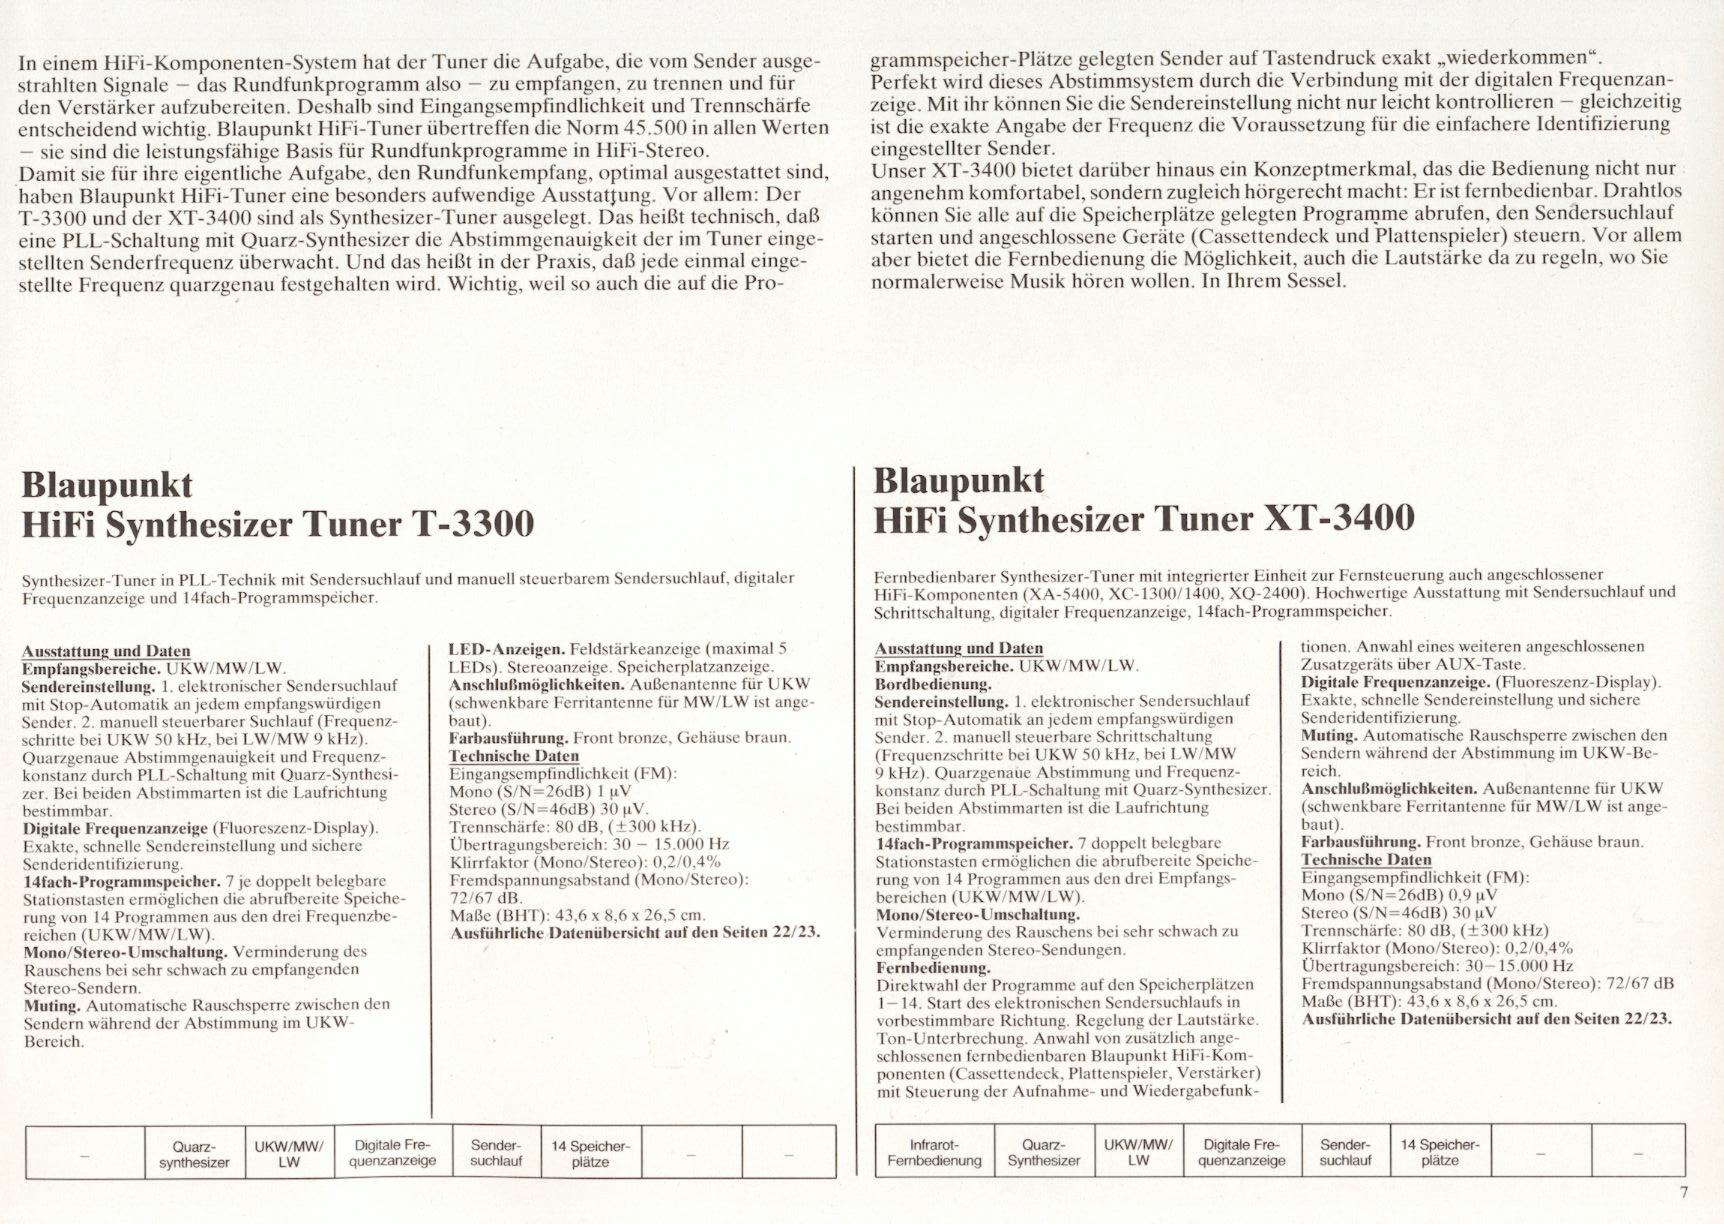 Blaupunkt T-3300-XT-3400-Prospekt-1981-2.jpg